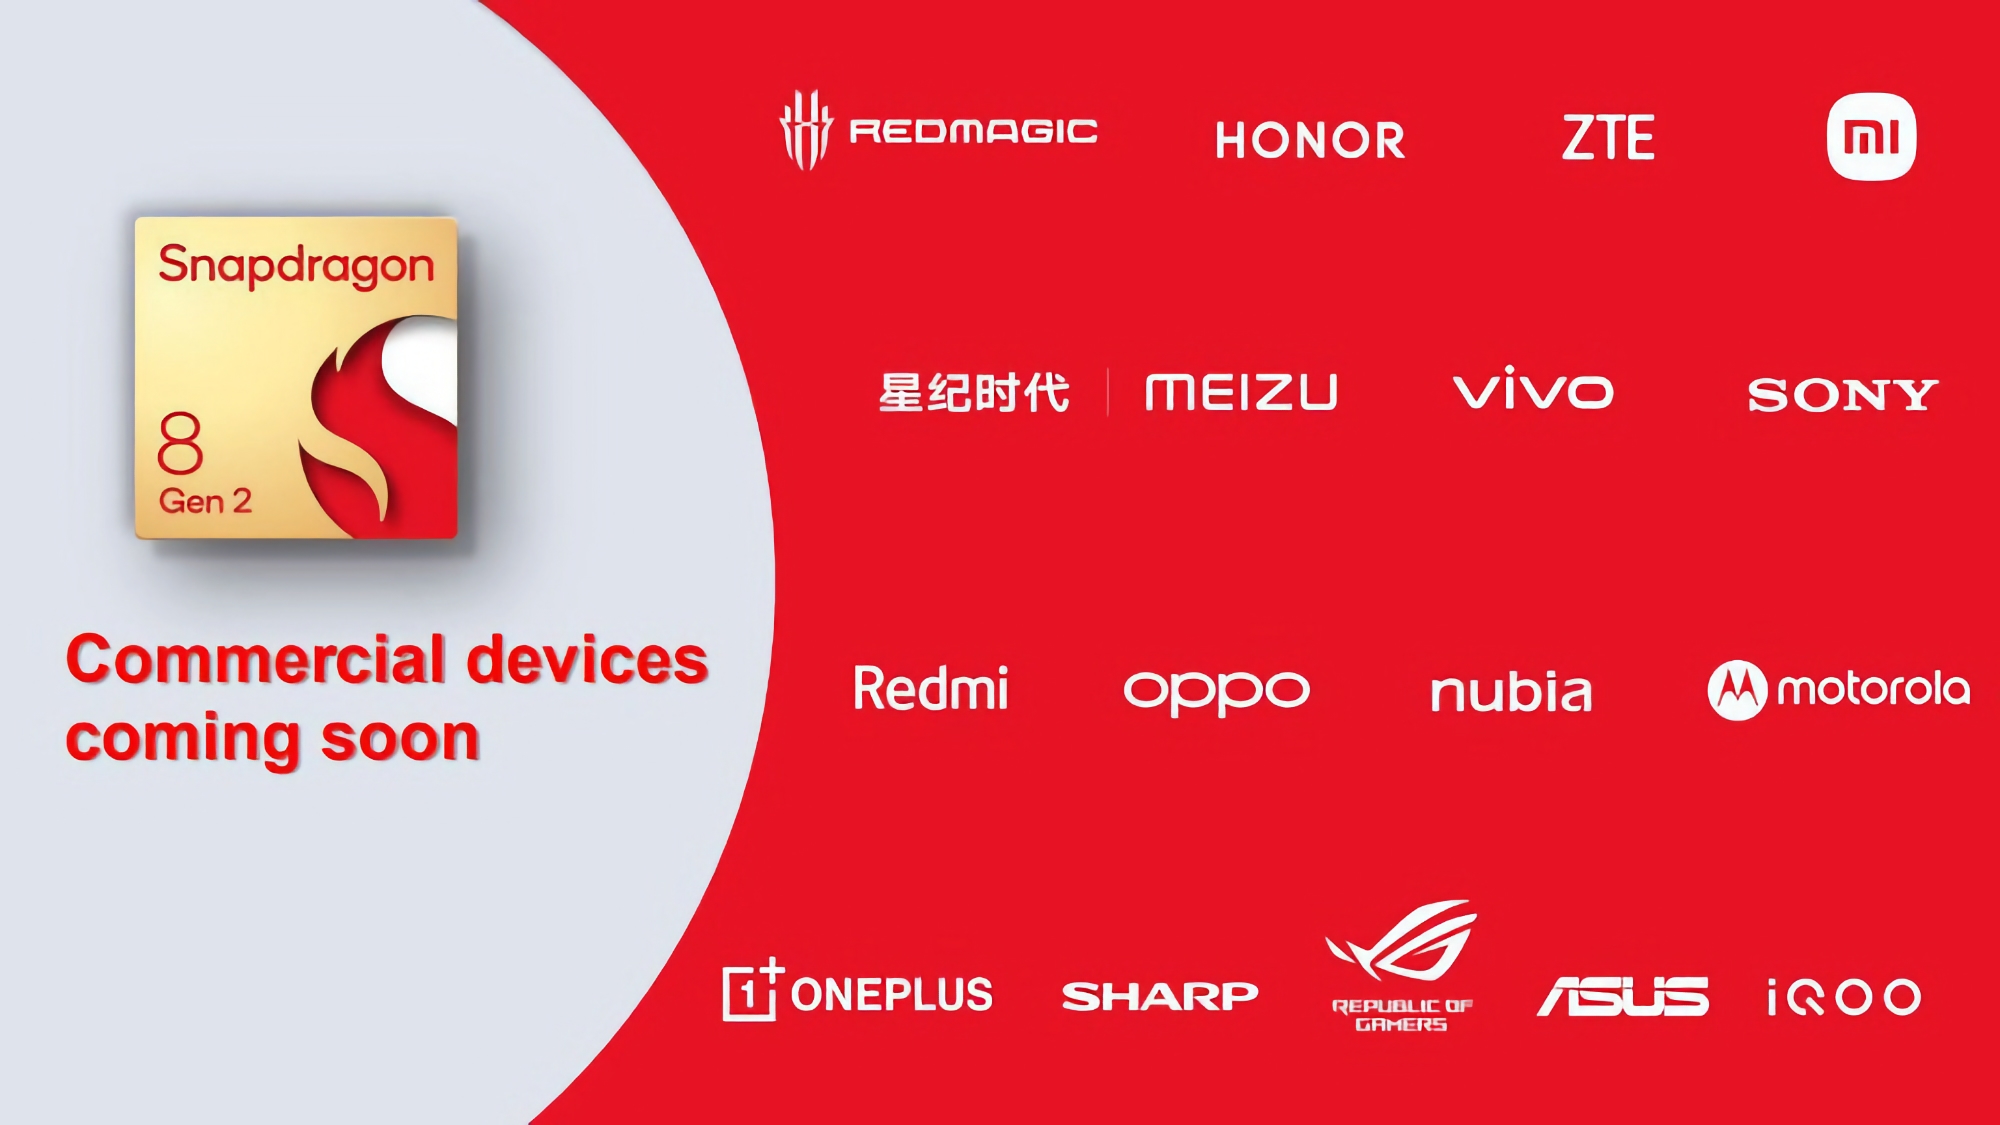 ASUS ROG, Honor, Sony, Motorola, ZTE, OnePlus, OPPO und andere: die Liste der Android-Smartphone-Hersteller, die den neuen Snapdragon 8 Gen 2 Chip verwenden werden